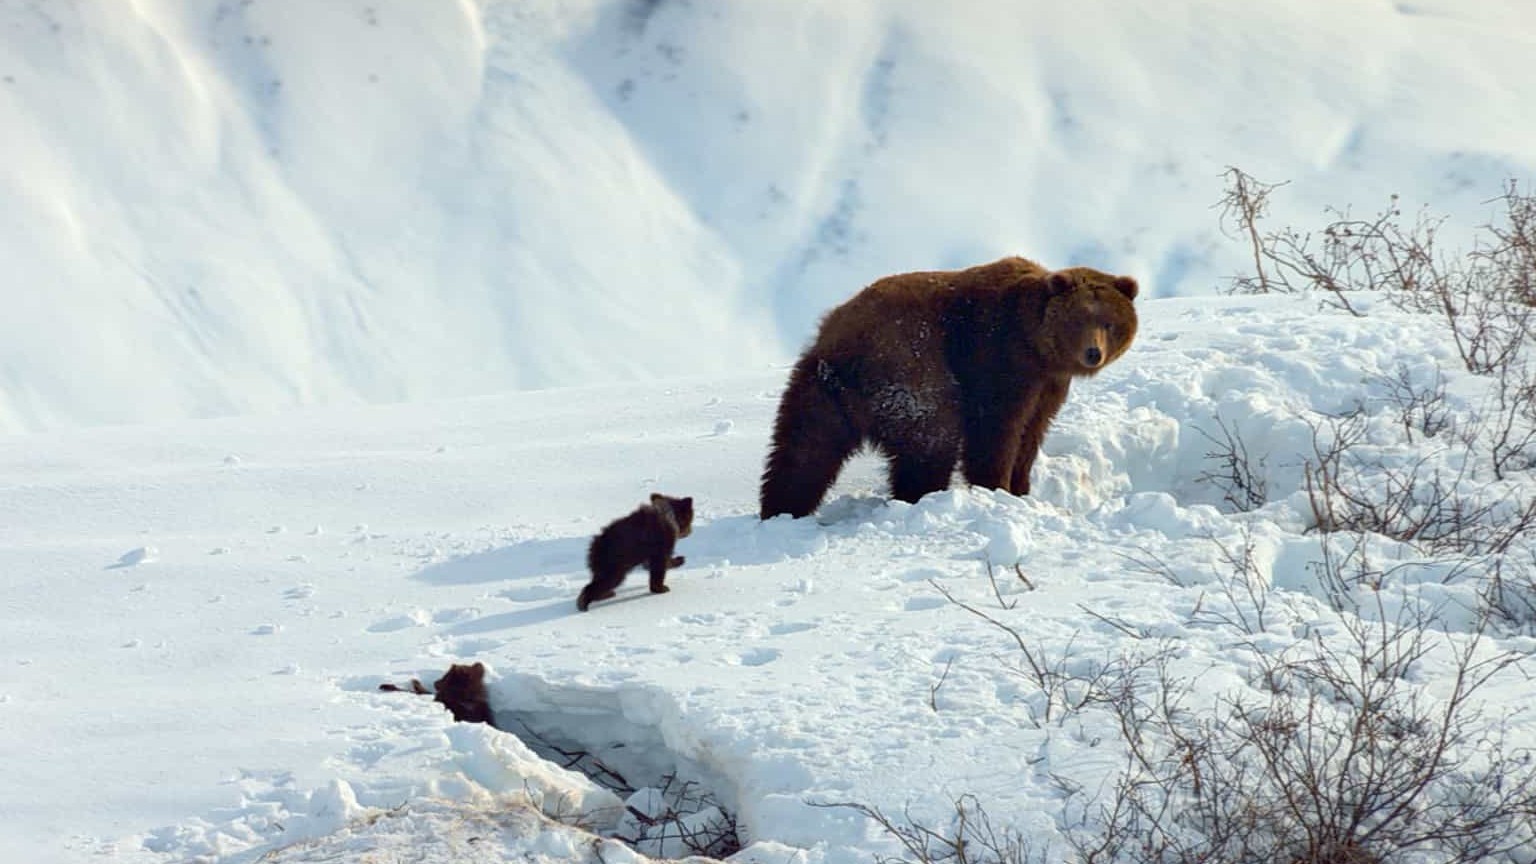 迪斯尼纪录片/动物棕熊纪录片《阿拉斯加的棕熊/熊世界 Bears》全1集 英语中字 1080P高清下载